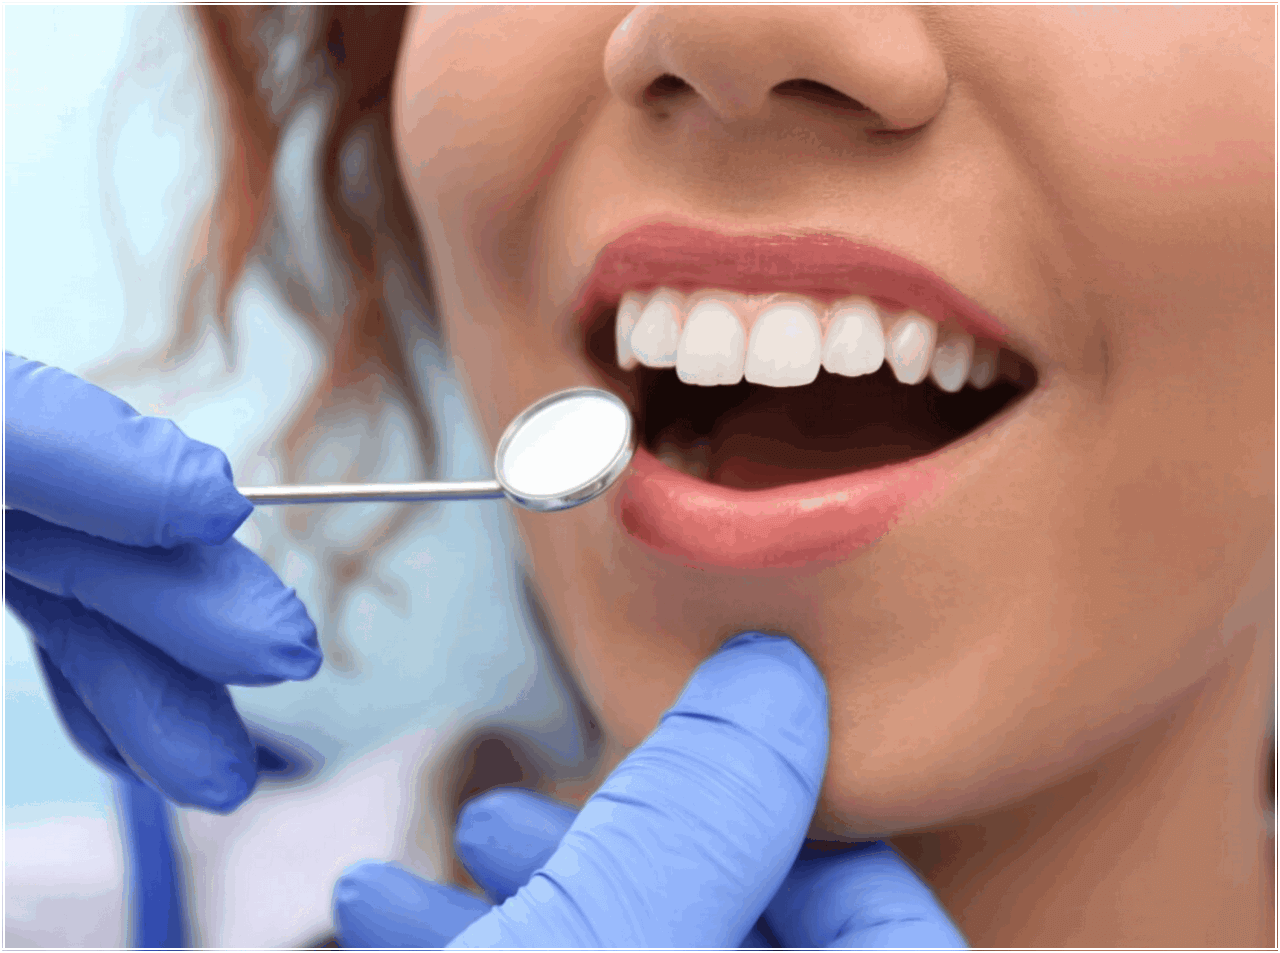 Комплексная гигиена полости рта. Профгигиена (ультразвук + Air-Flow). Профессиональная гигиена полости рта. Гигиена полости рта в стоматологии. Профессиональная гигиена полости рта в стоматологии.